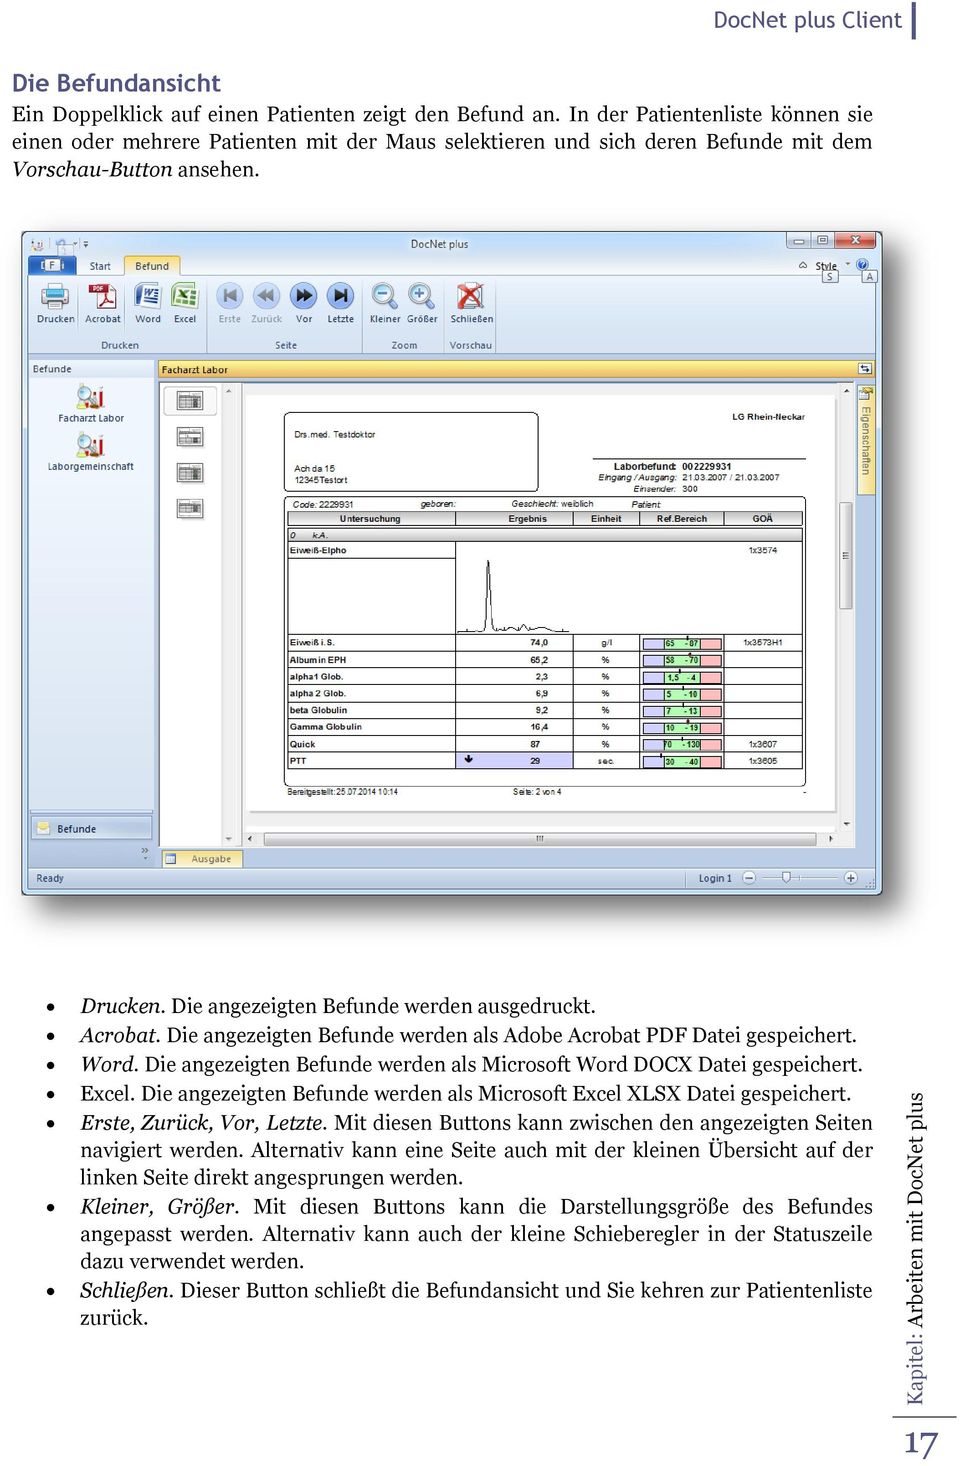 Acrobat. Die angezeigten Befunde werden als Adobe Acrobat PDF Datei gespeichert. Word. Die angezeigten Befunde werden als Microsoft Word DOCX Datei gespeichert. Excel.